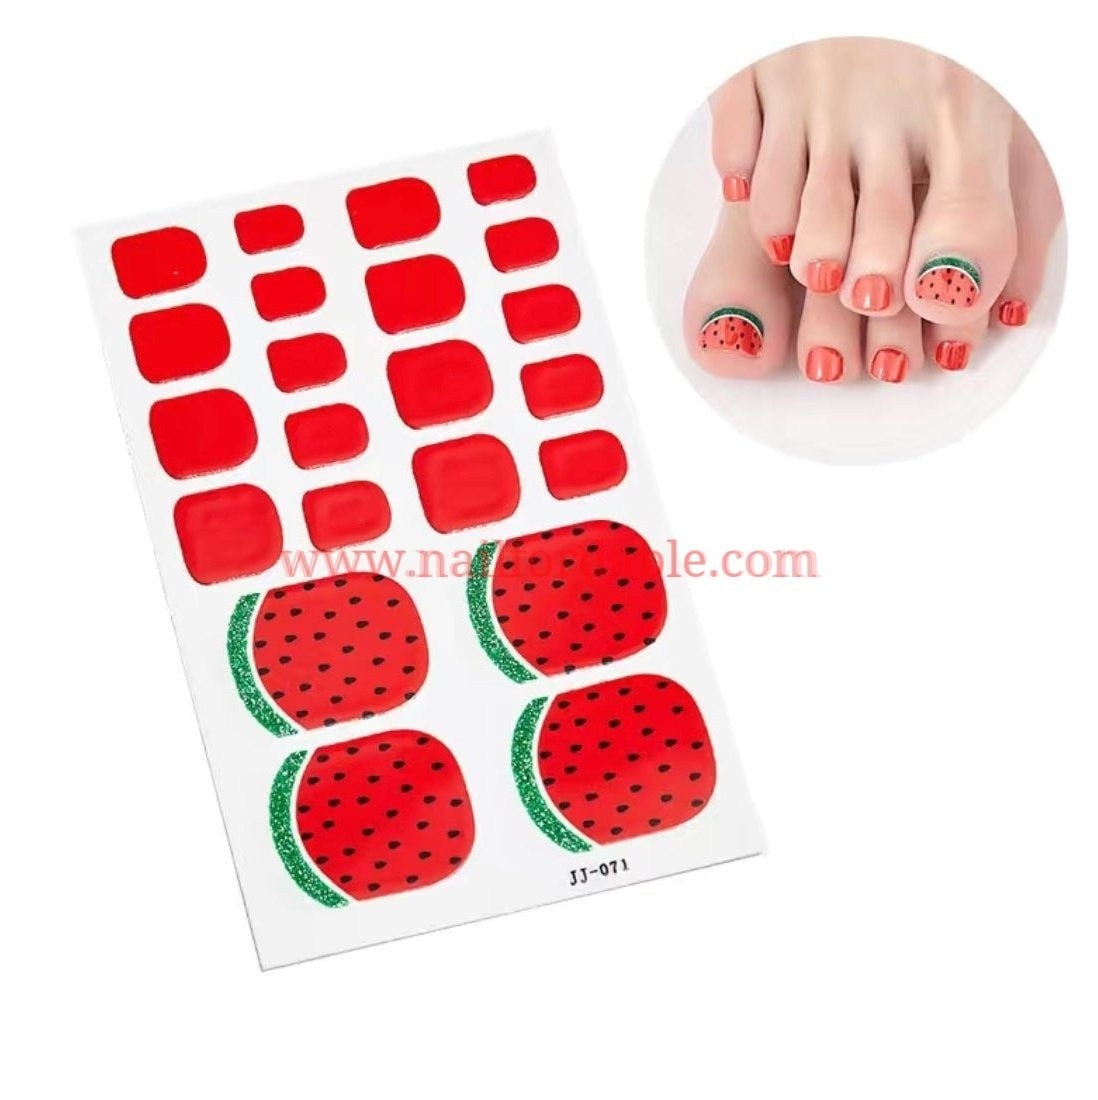 Watermelon Nail Wraps | Semi Cured Gel Wraps | Gel Nail Wraps |Nail Polish | Nail Stickers